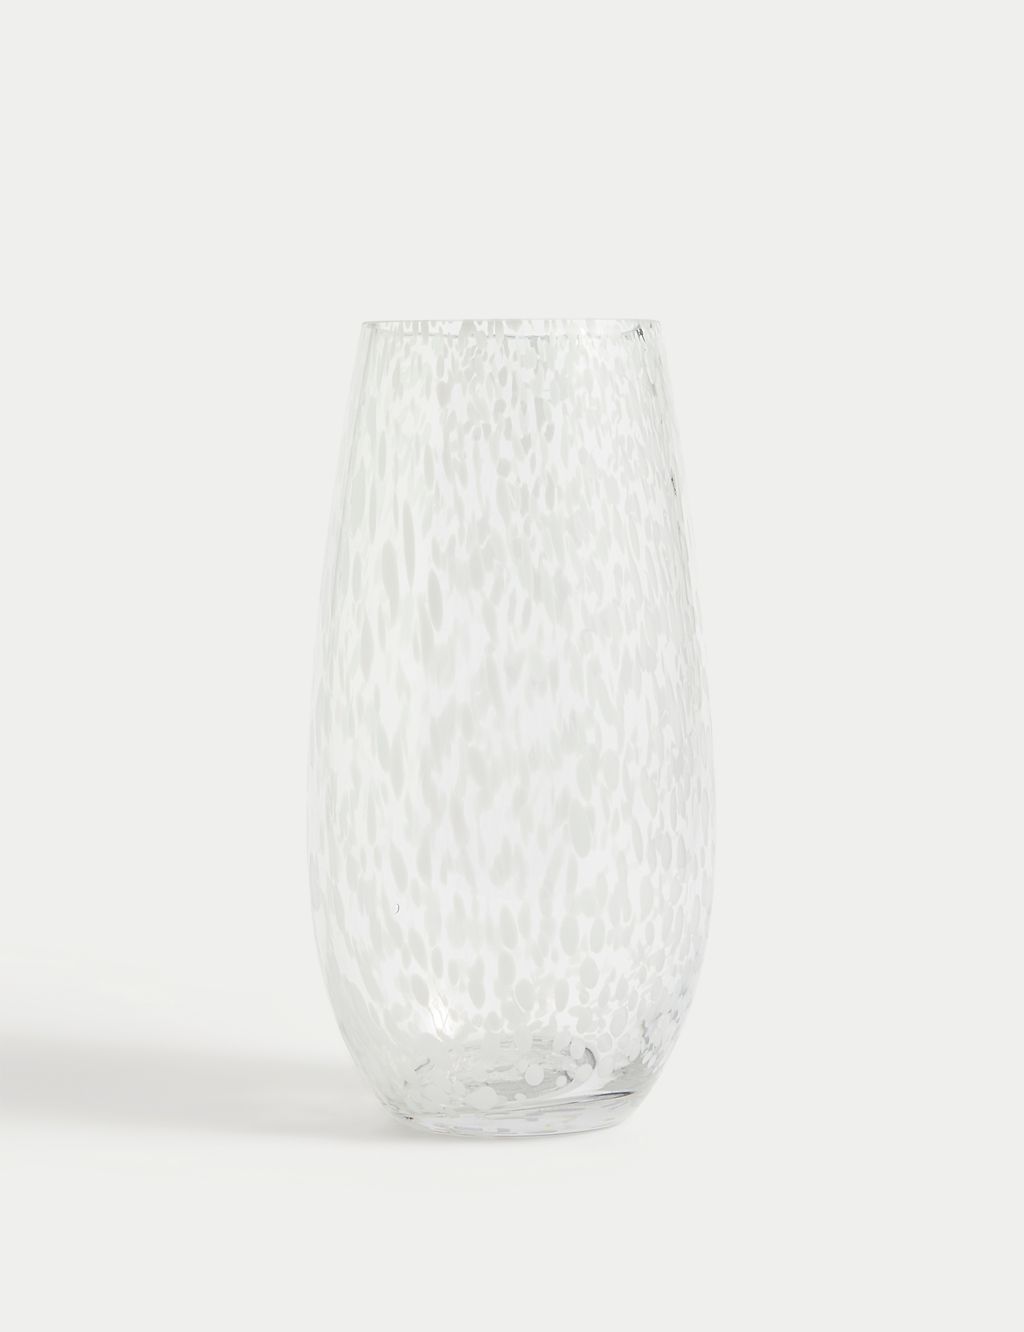 Confetti Glass Vase 1 of 4